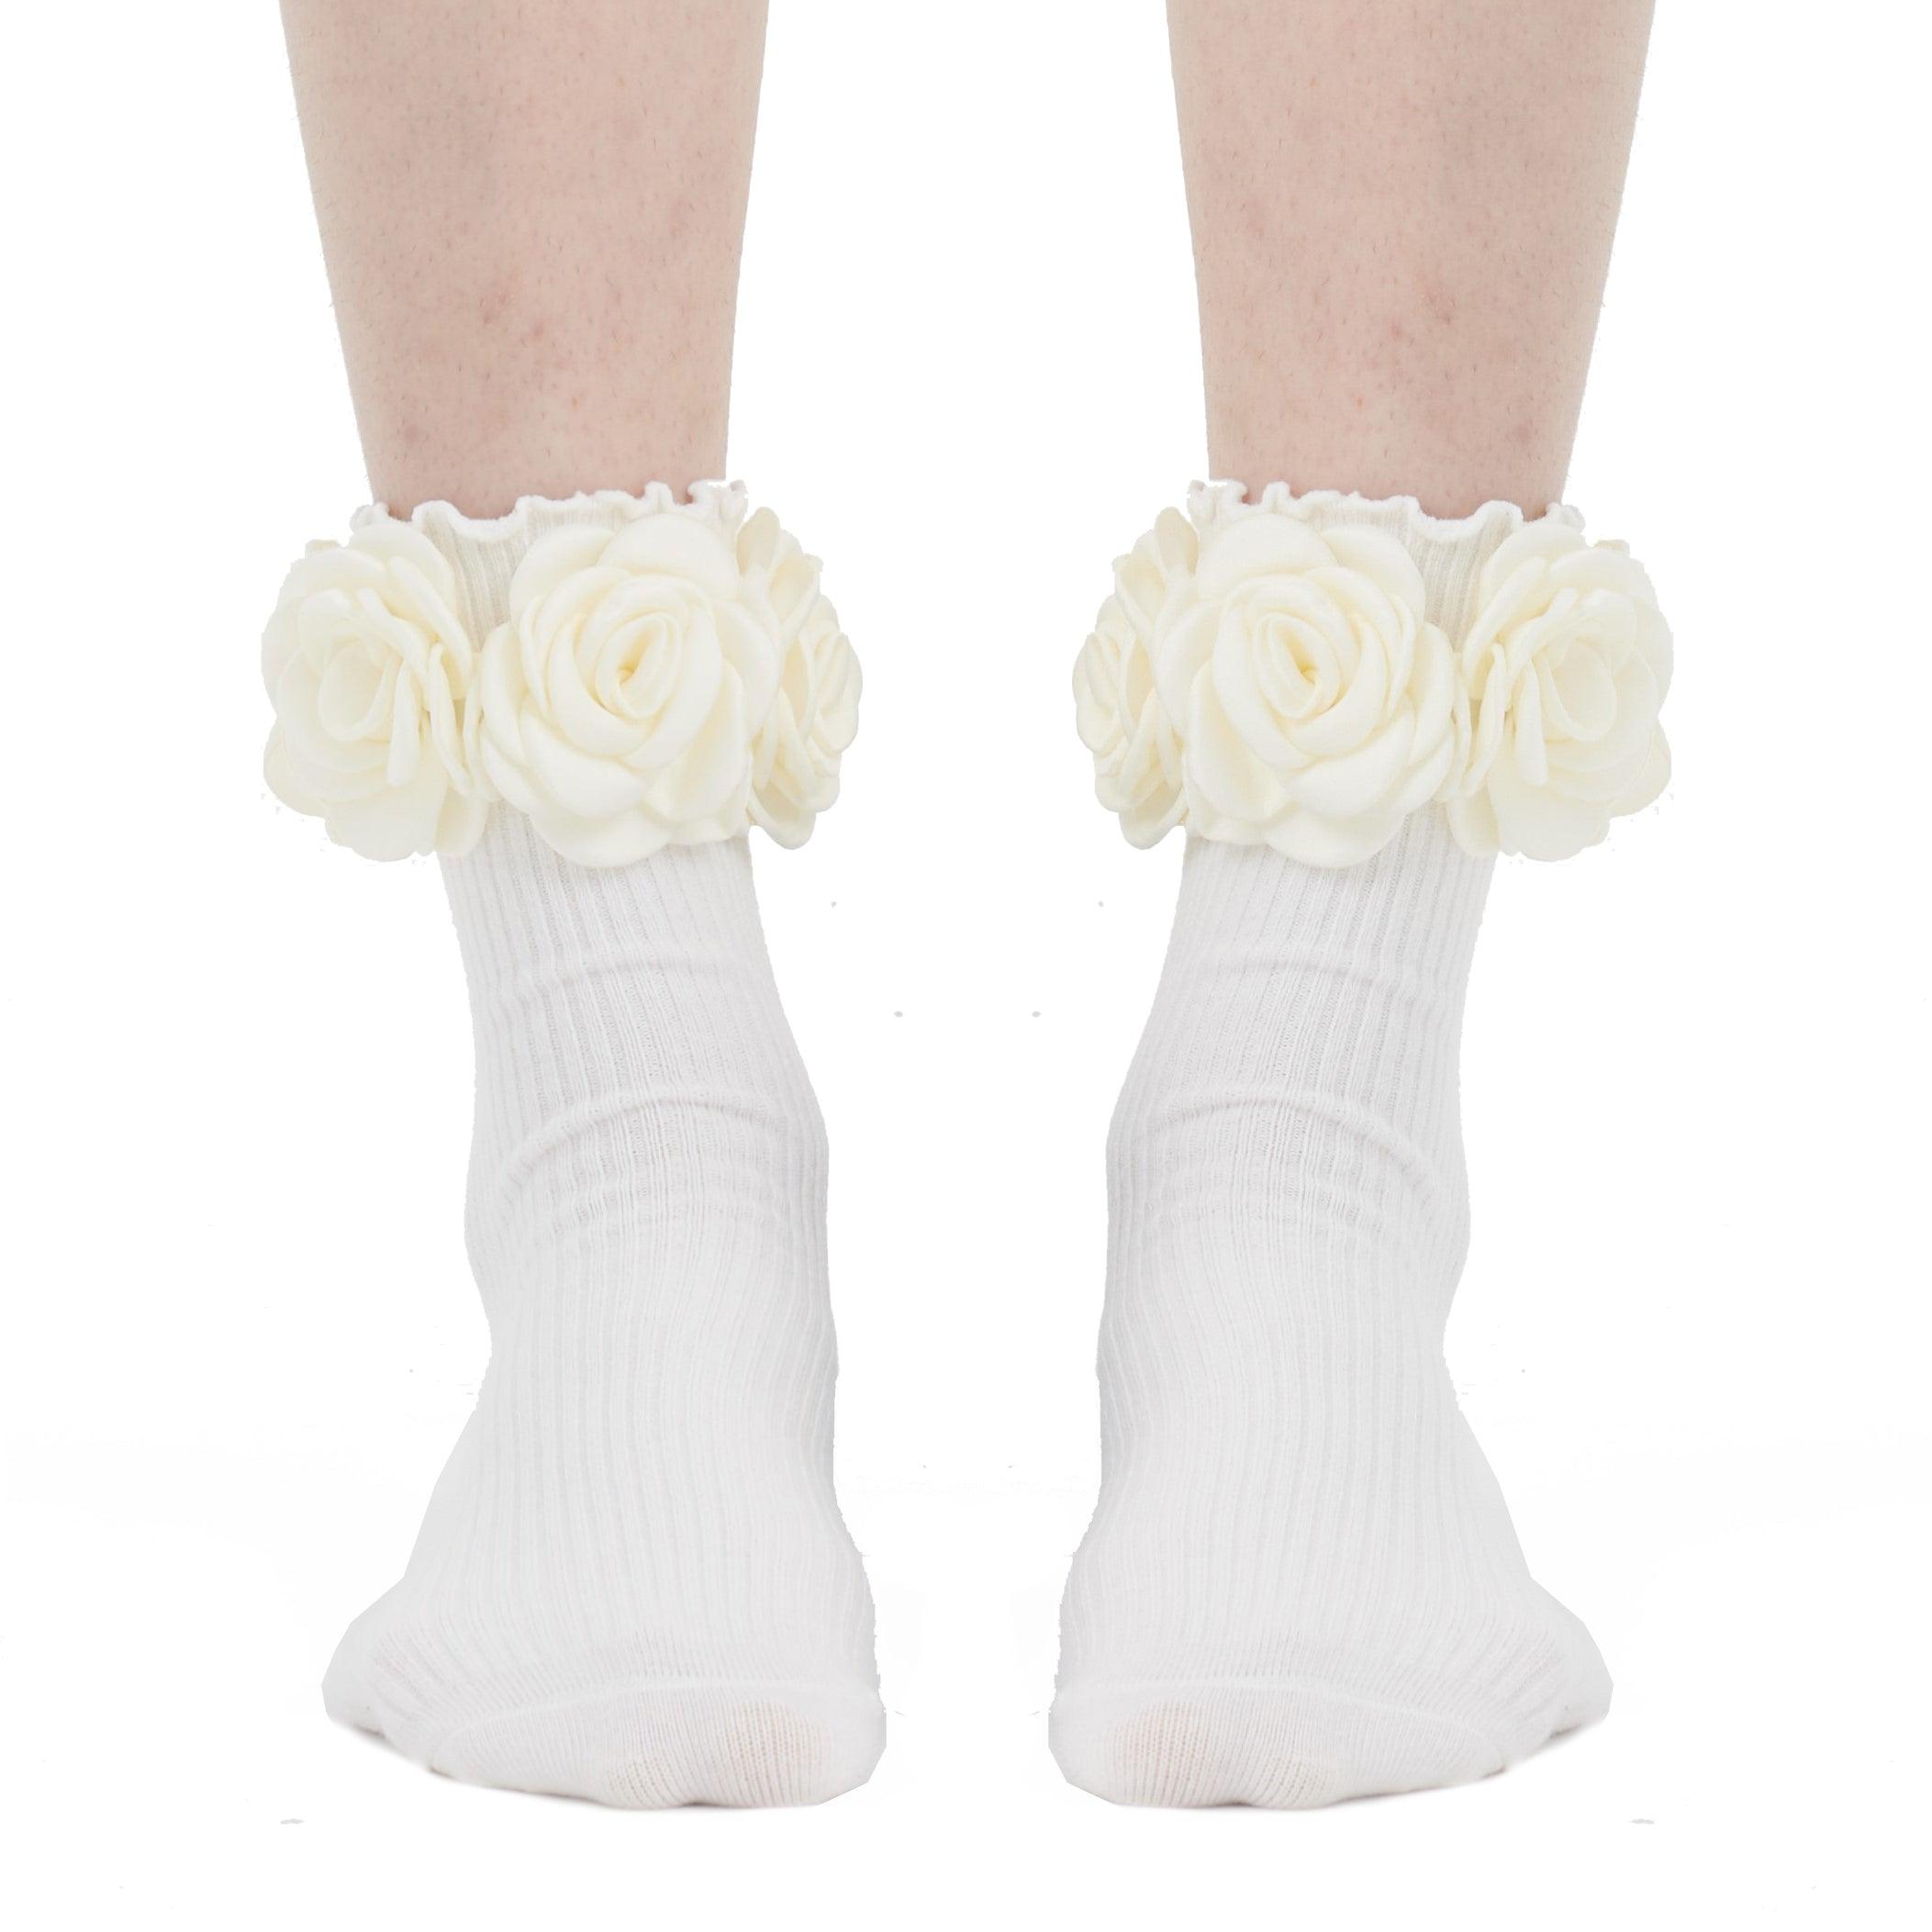 3D Flower Socks - Uniqvibe